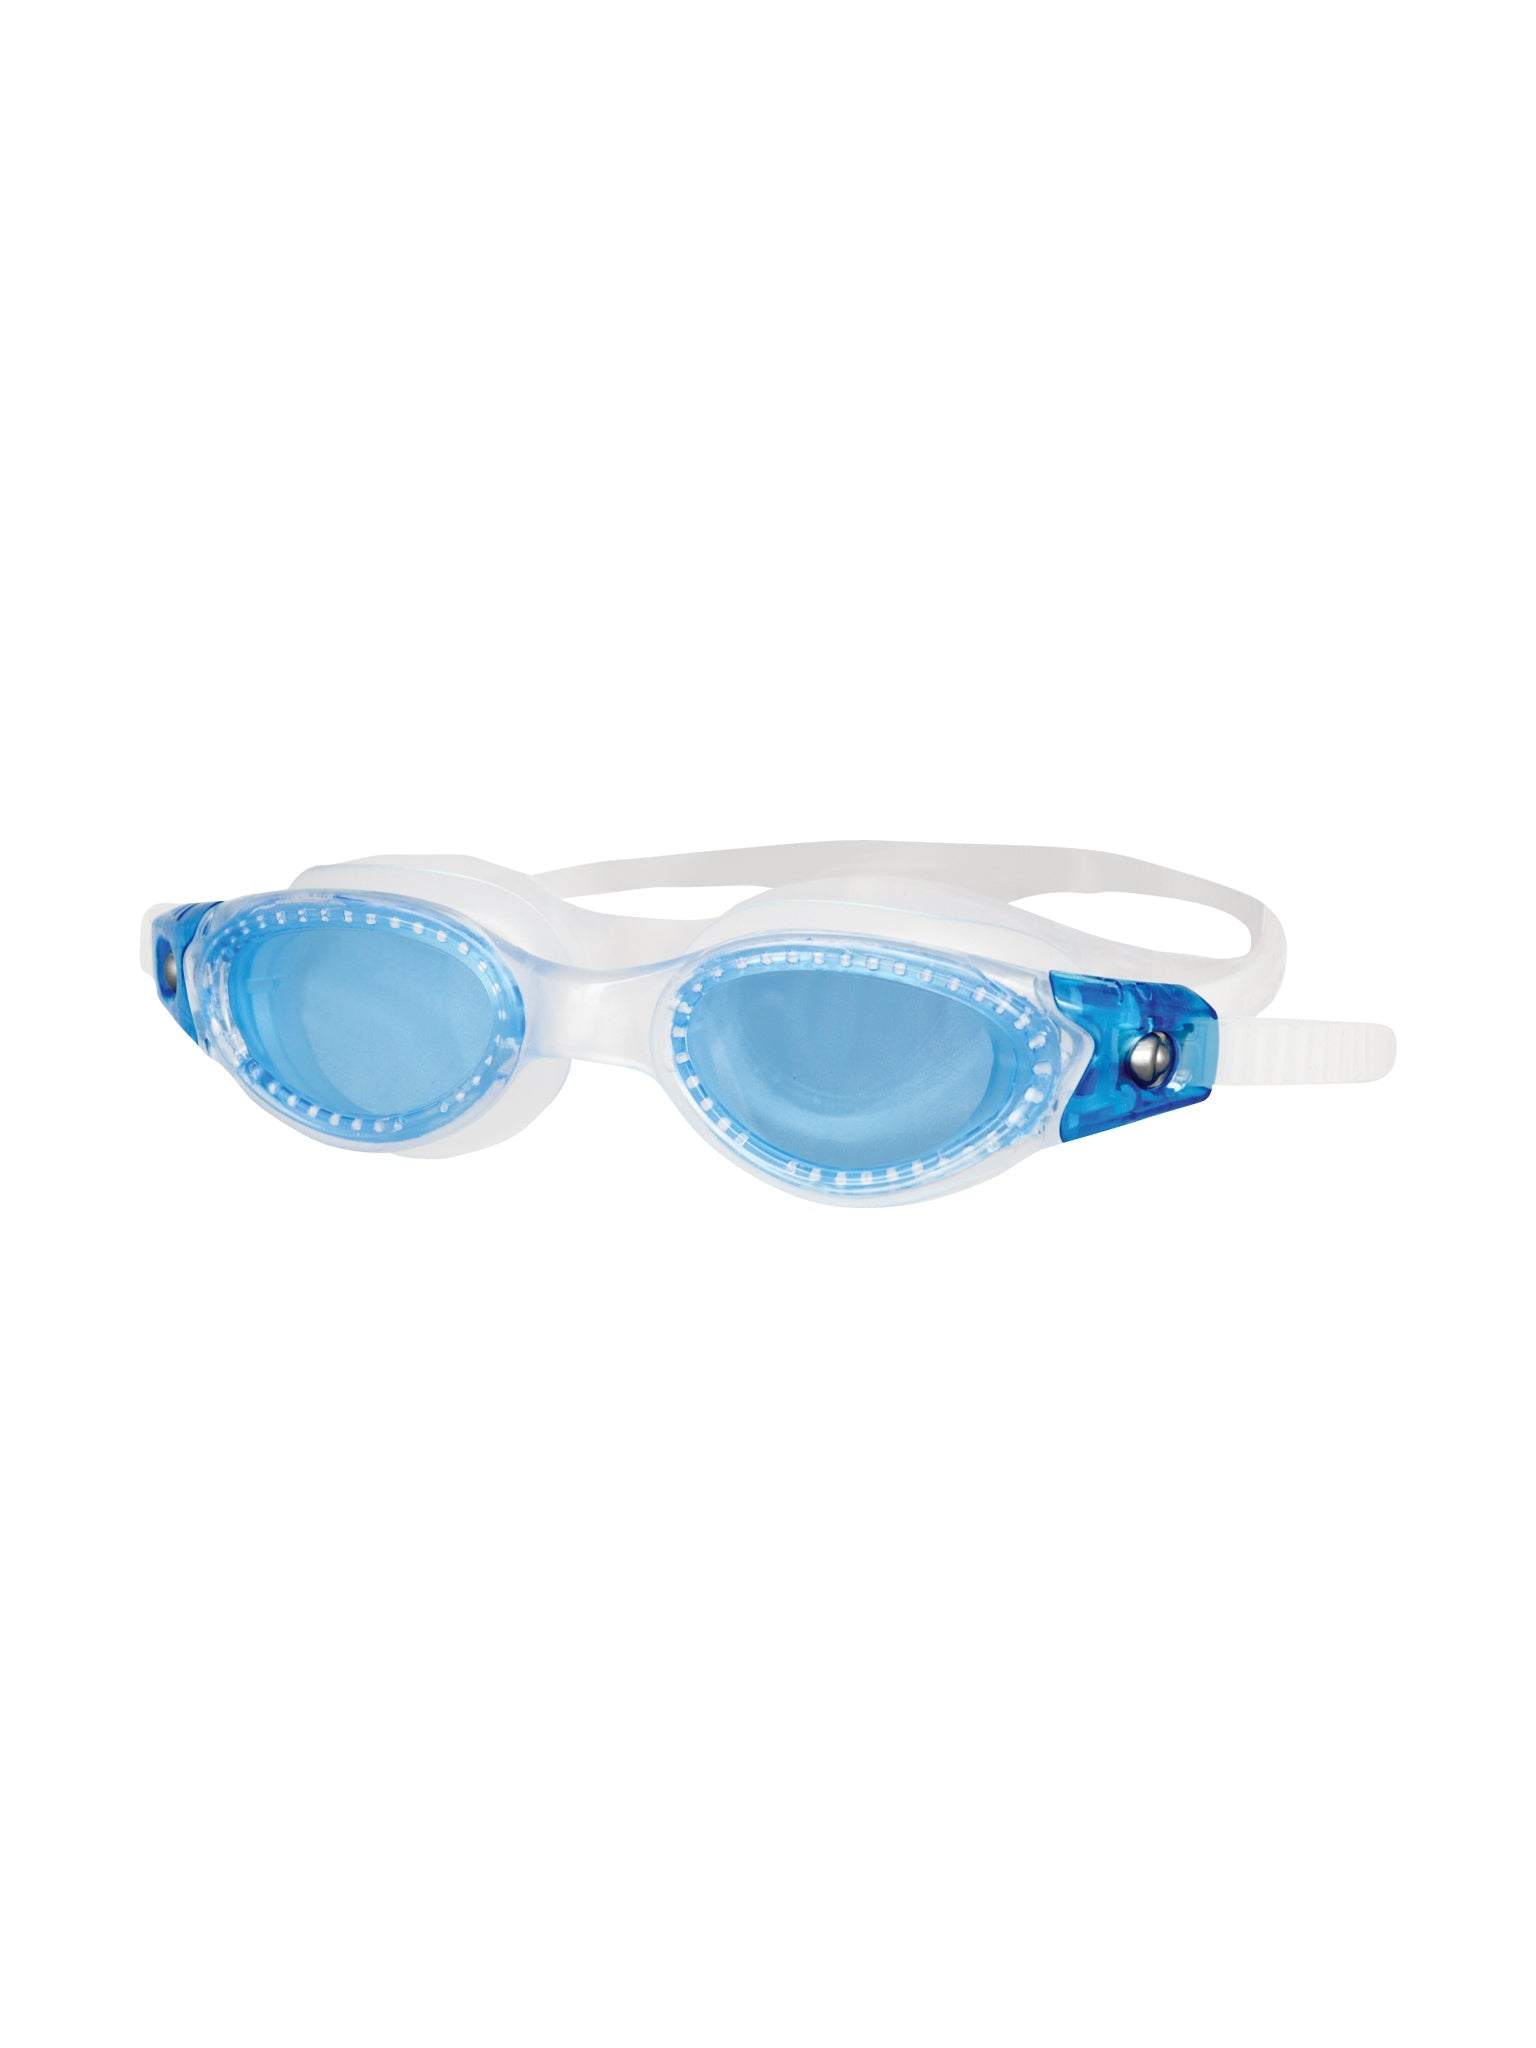 Junior Pacifica Swim Goggles - Clear/Blue